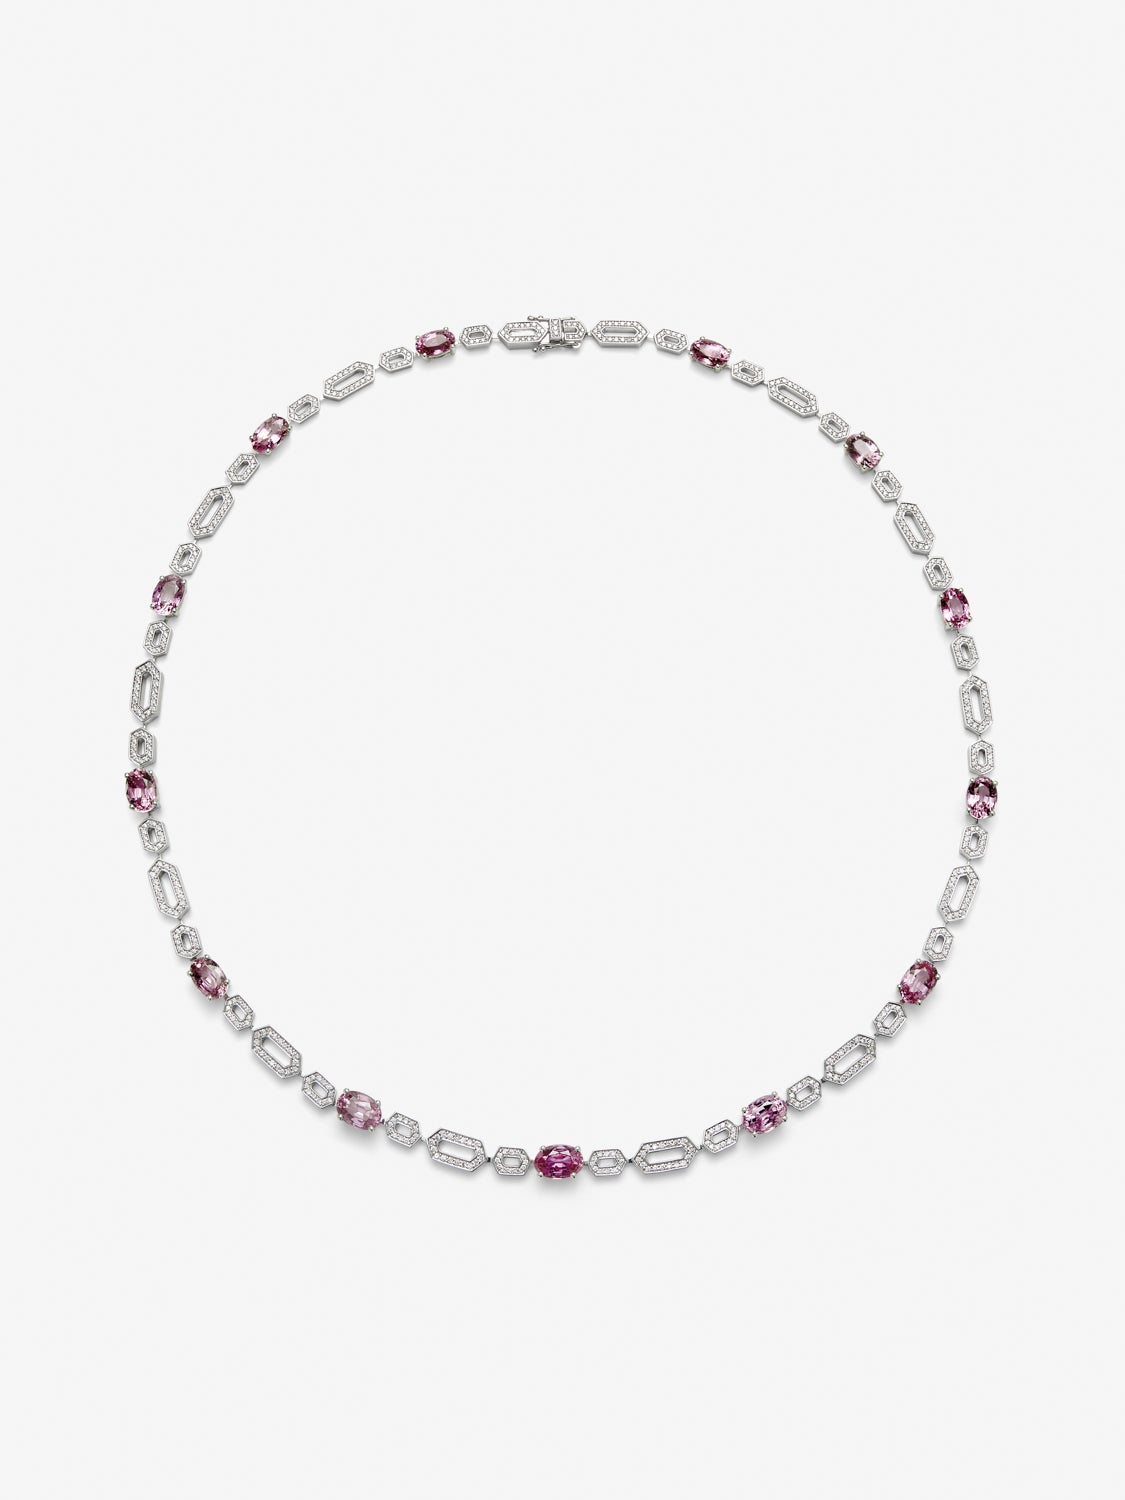 Collar de oro blanco de 18K con zafiros rosa vivid en talla oval de 14,43 cts y diamantes en talla brillante de 1,73 cts